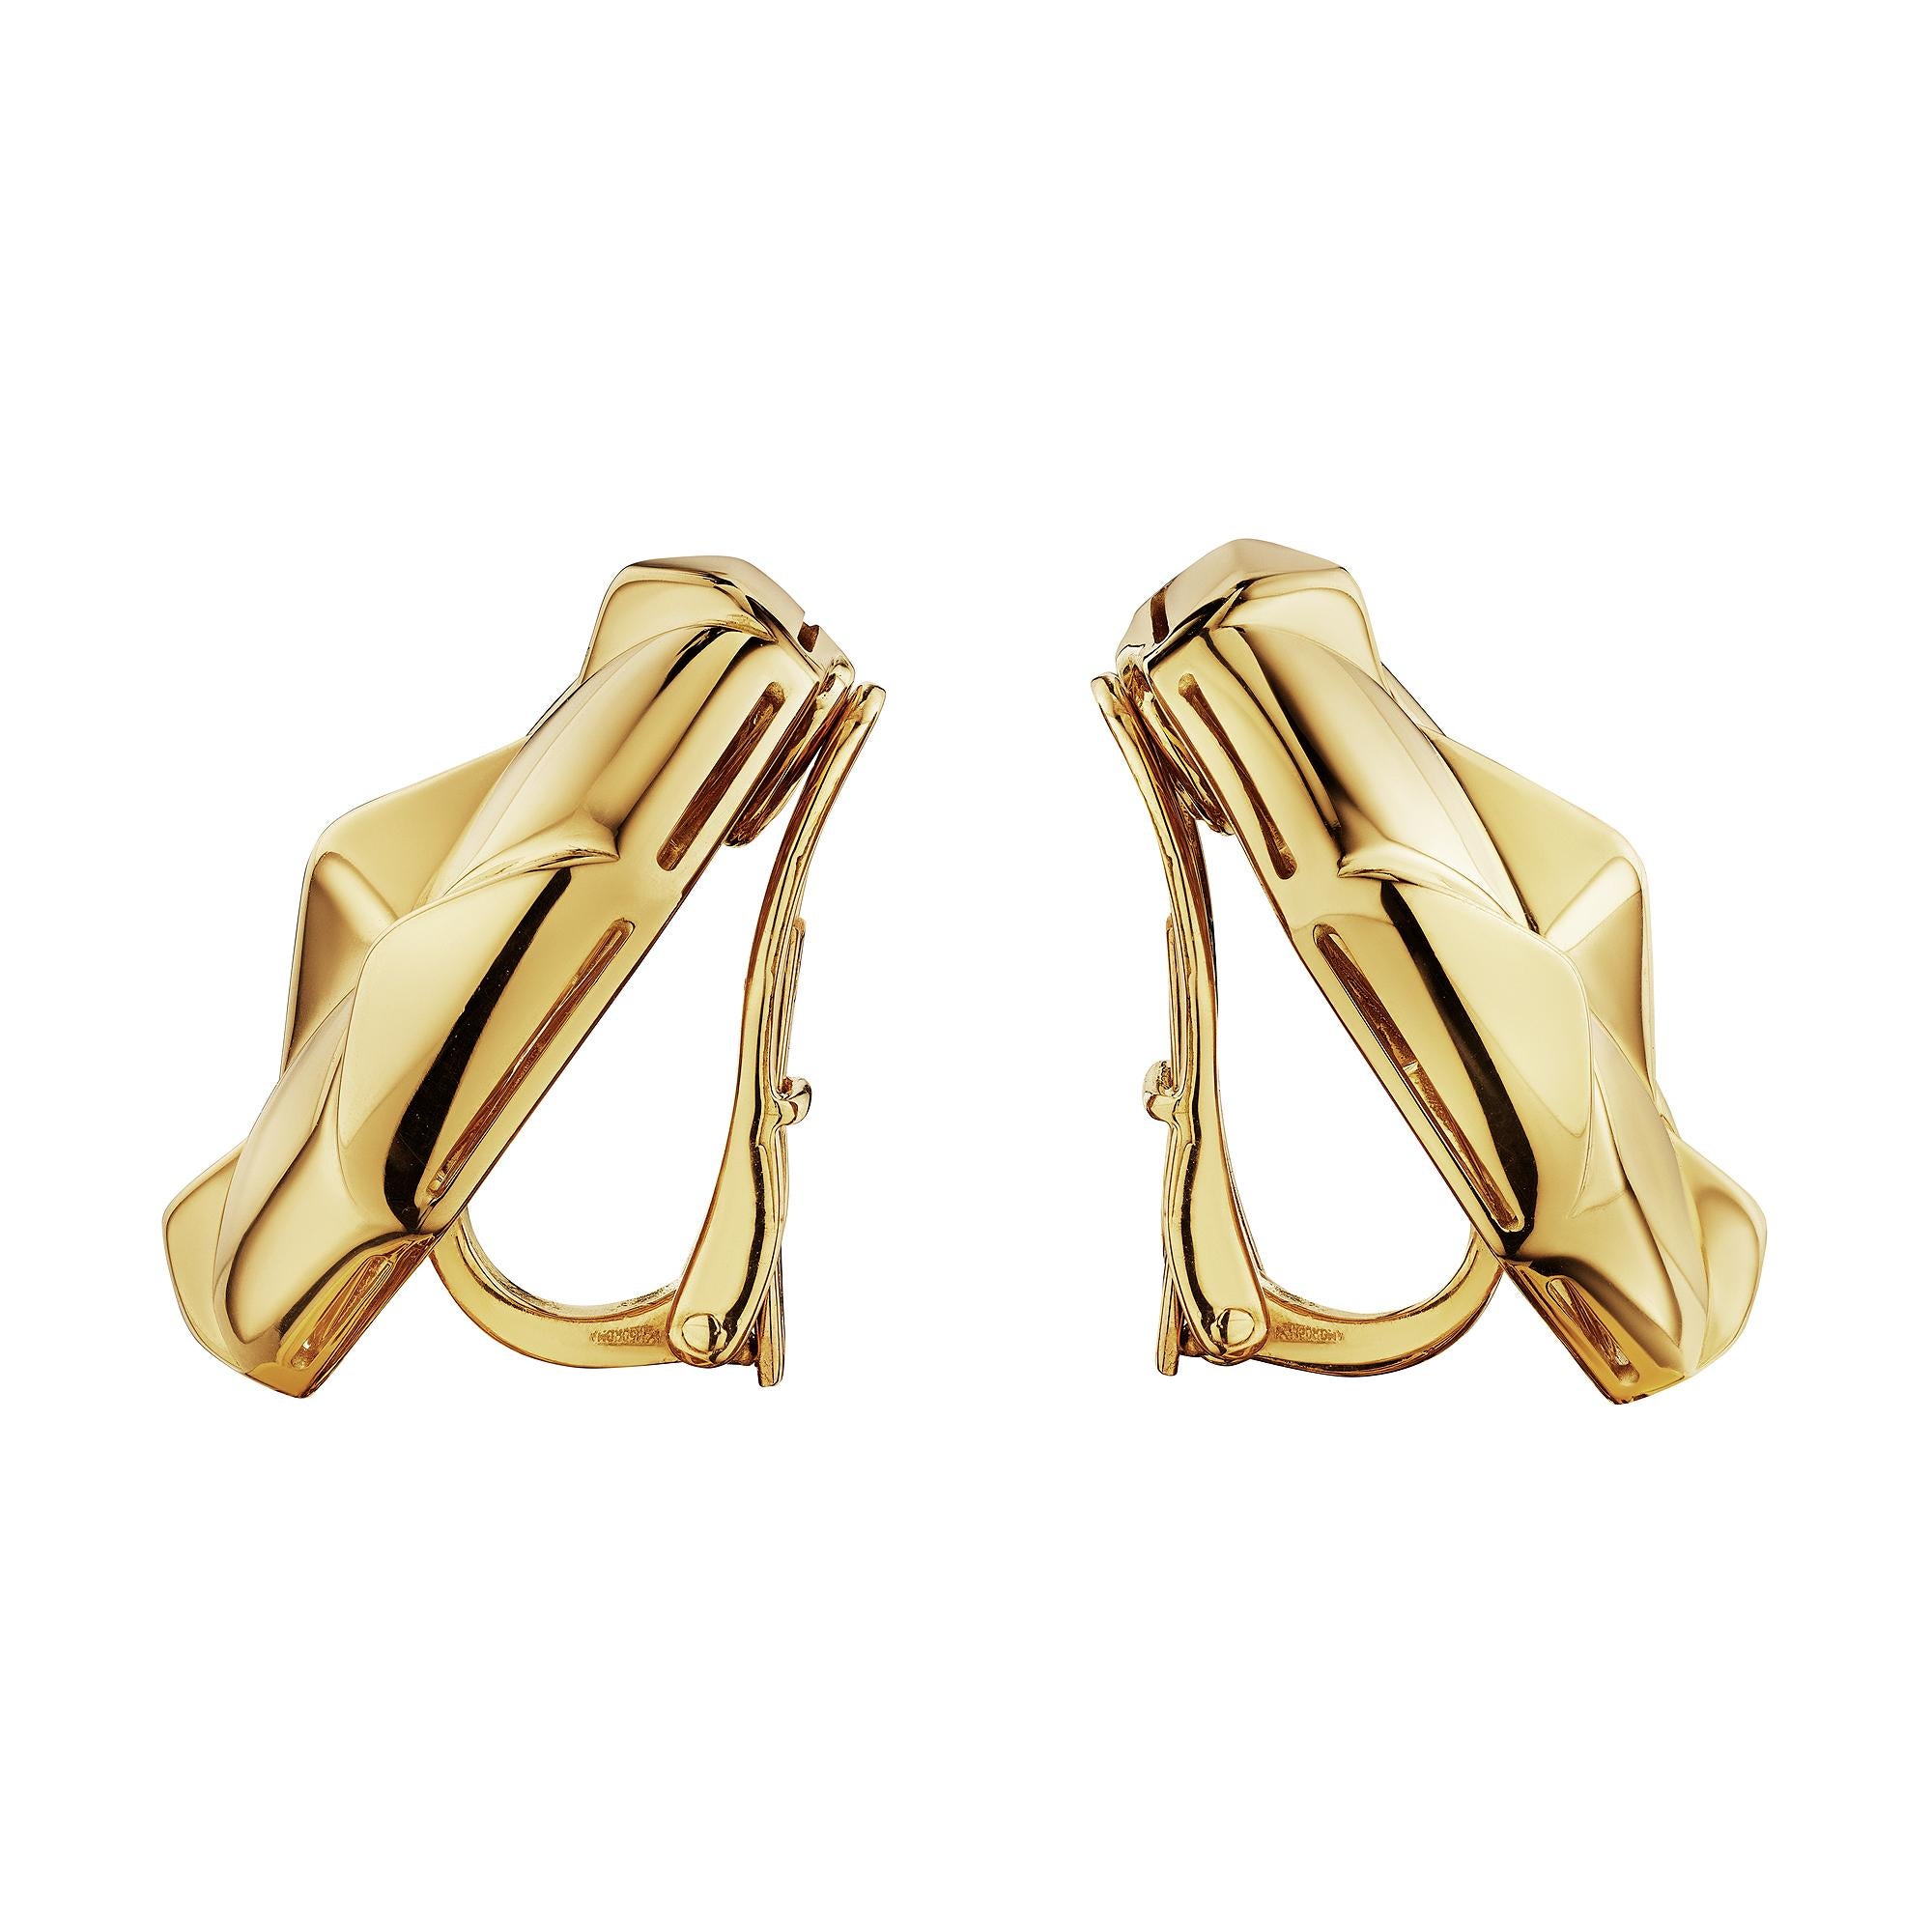 Ces boucles d'oreilles clip en or jaune 18 carats, matelassées et modernistes de Bulgari sont tout simplement parfaites.  Avec une surface polie qui reflète audacieusement la lumière, ces boucles d'oreilles de collection uniques en leur genre sont